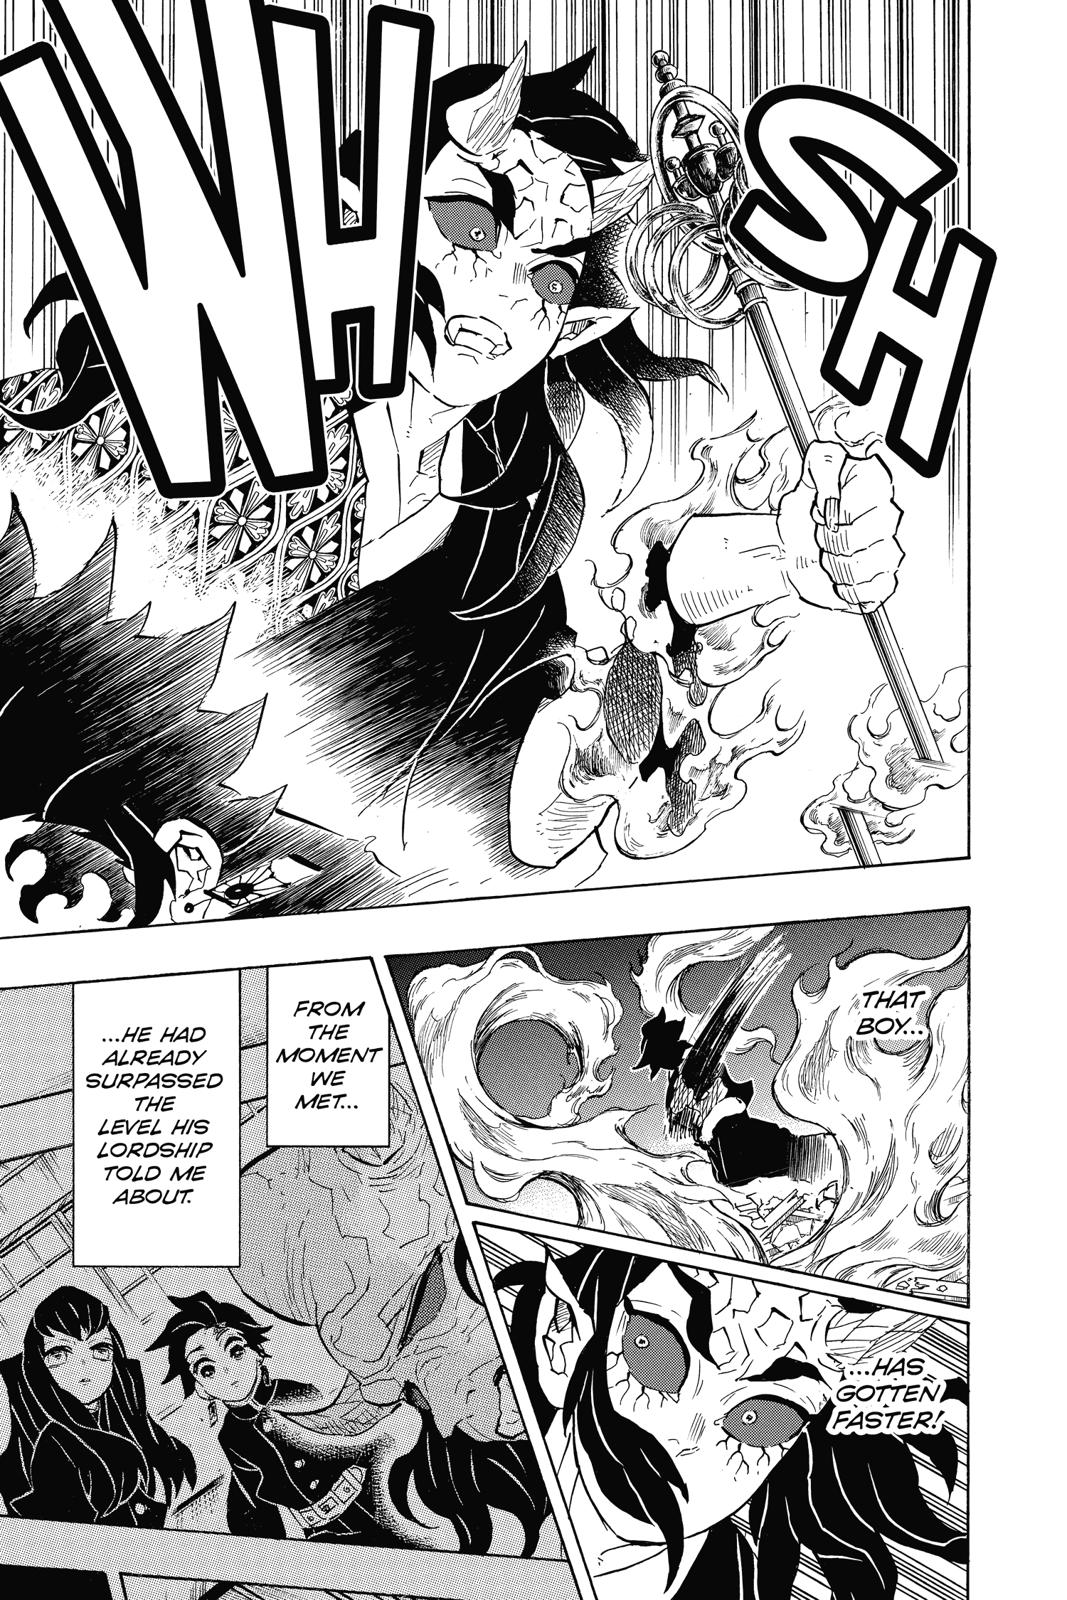 Demon Slayer Manga Manga Chapter - 114 - image 5